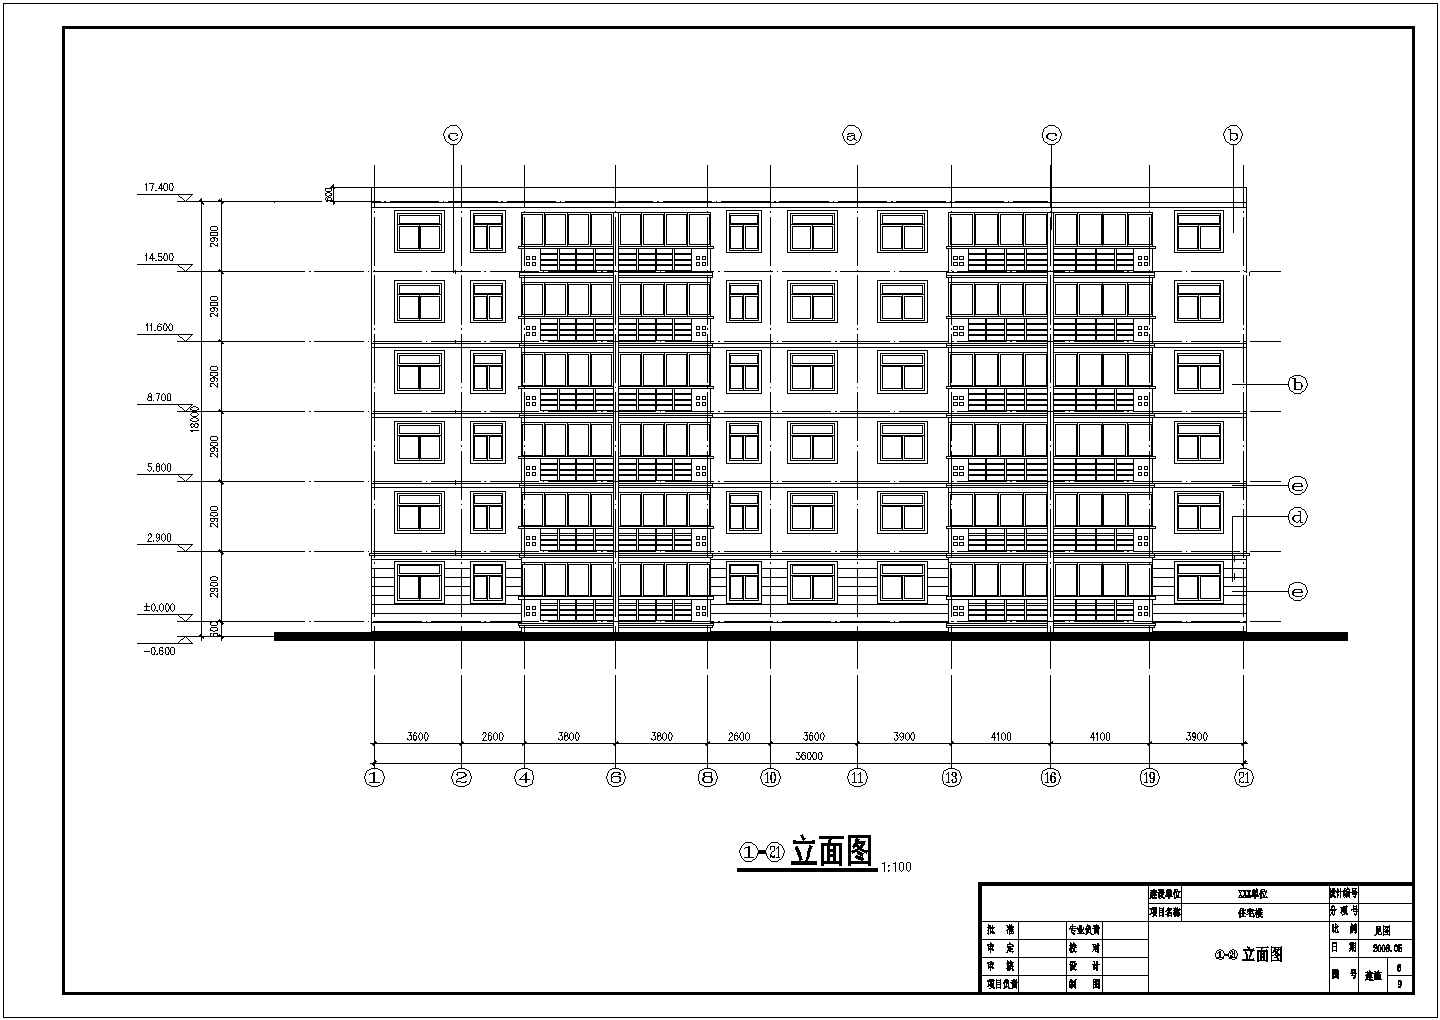 滁州某高校的综合办公楼建筑结构毕业设计方案图纸（高16.44米）